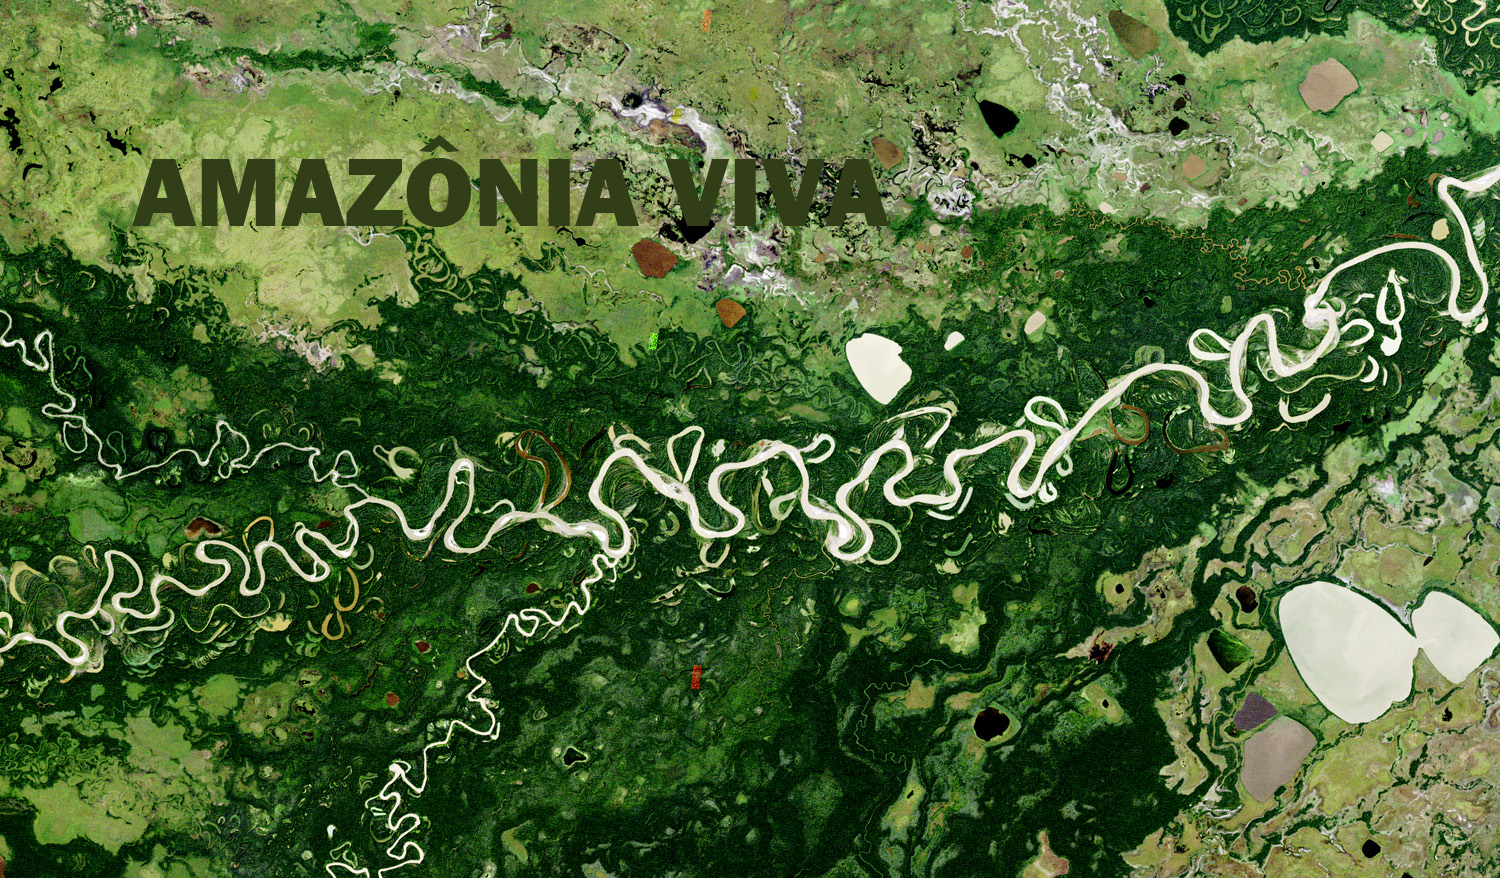 Pesquisa sobre conservação na Amazônia 9: “proteção integral” versus “uso sustentável”